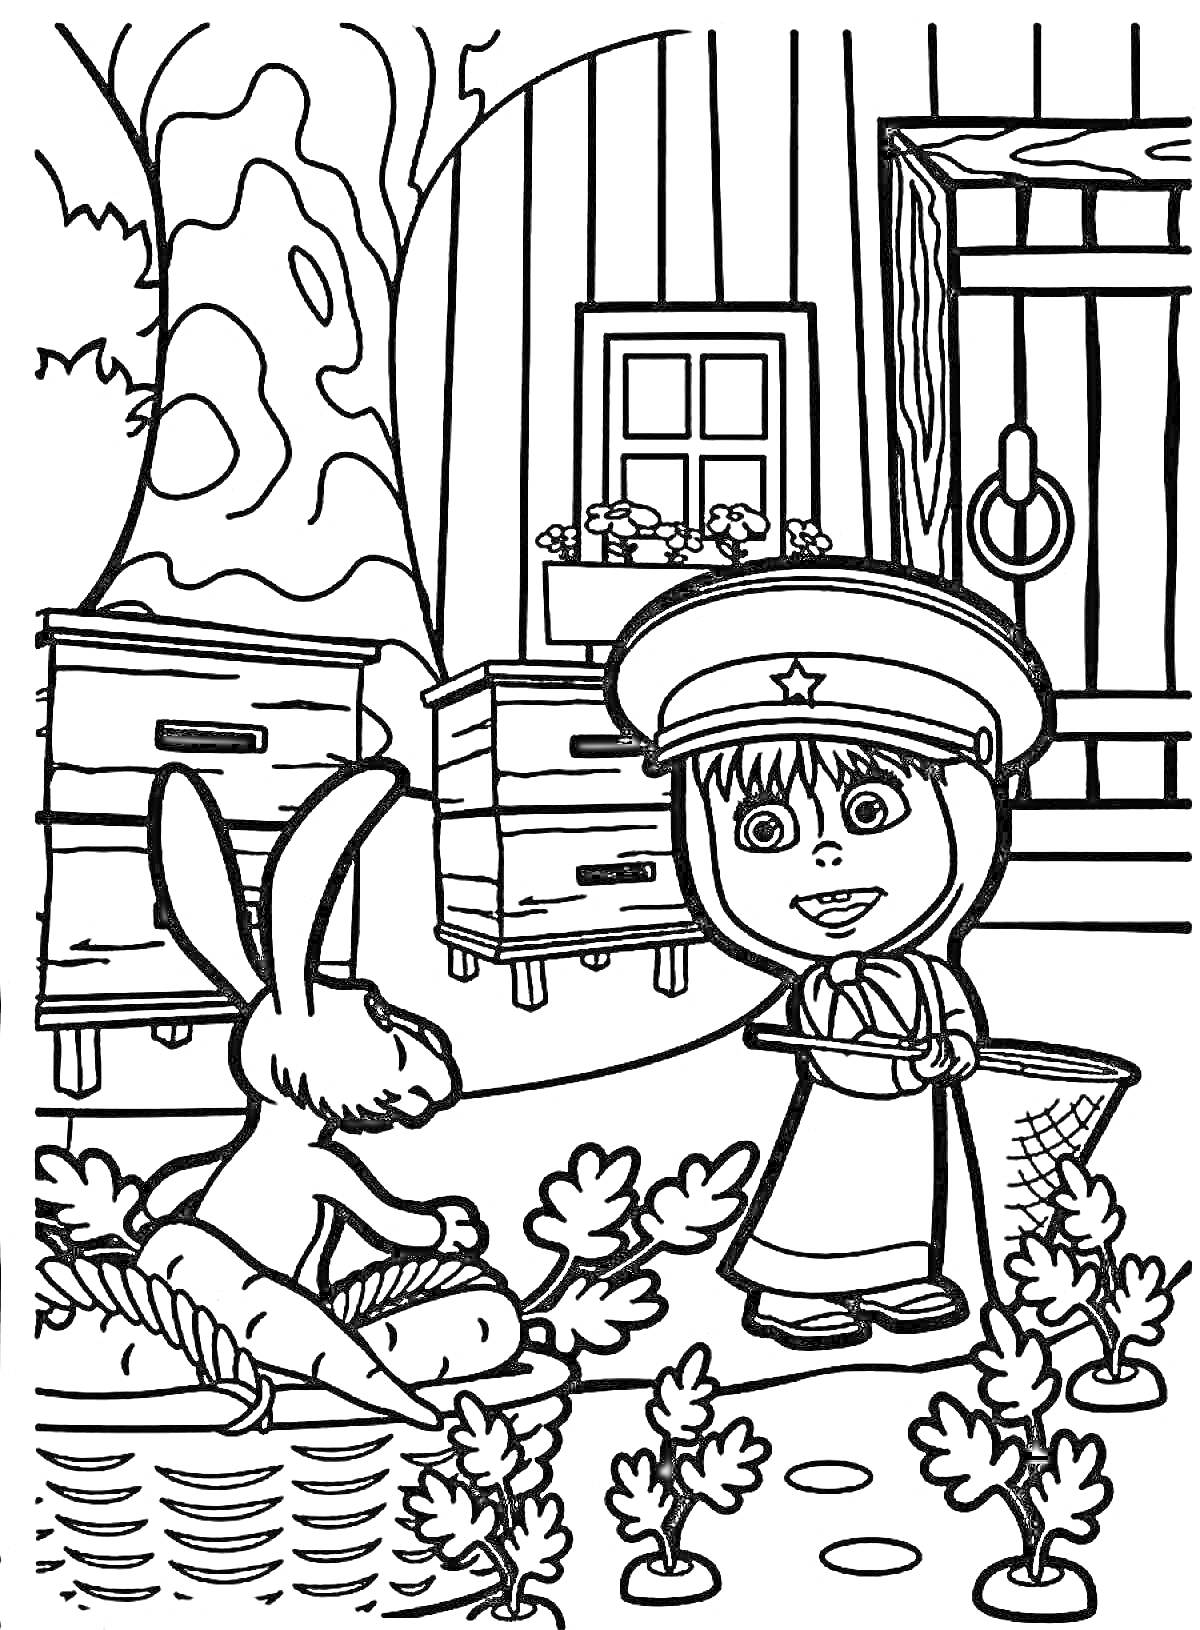 Маша в костюме пограничника с корзинкой, заяц рядом с корзиной, деревянный дом с окном и цветами, пчелиные ульи, дерево на фоне